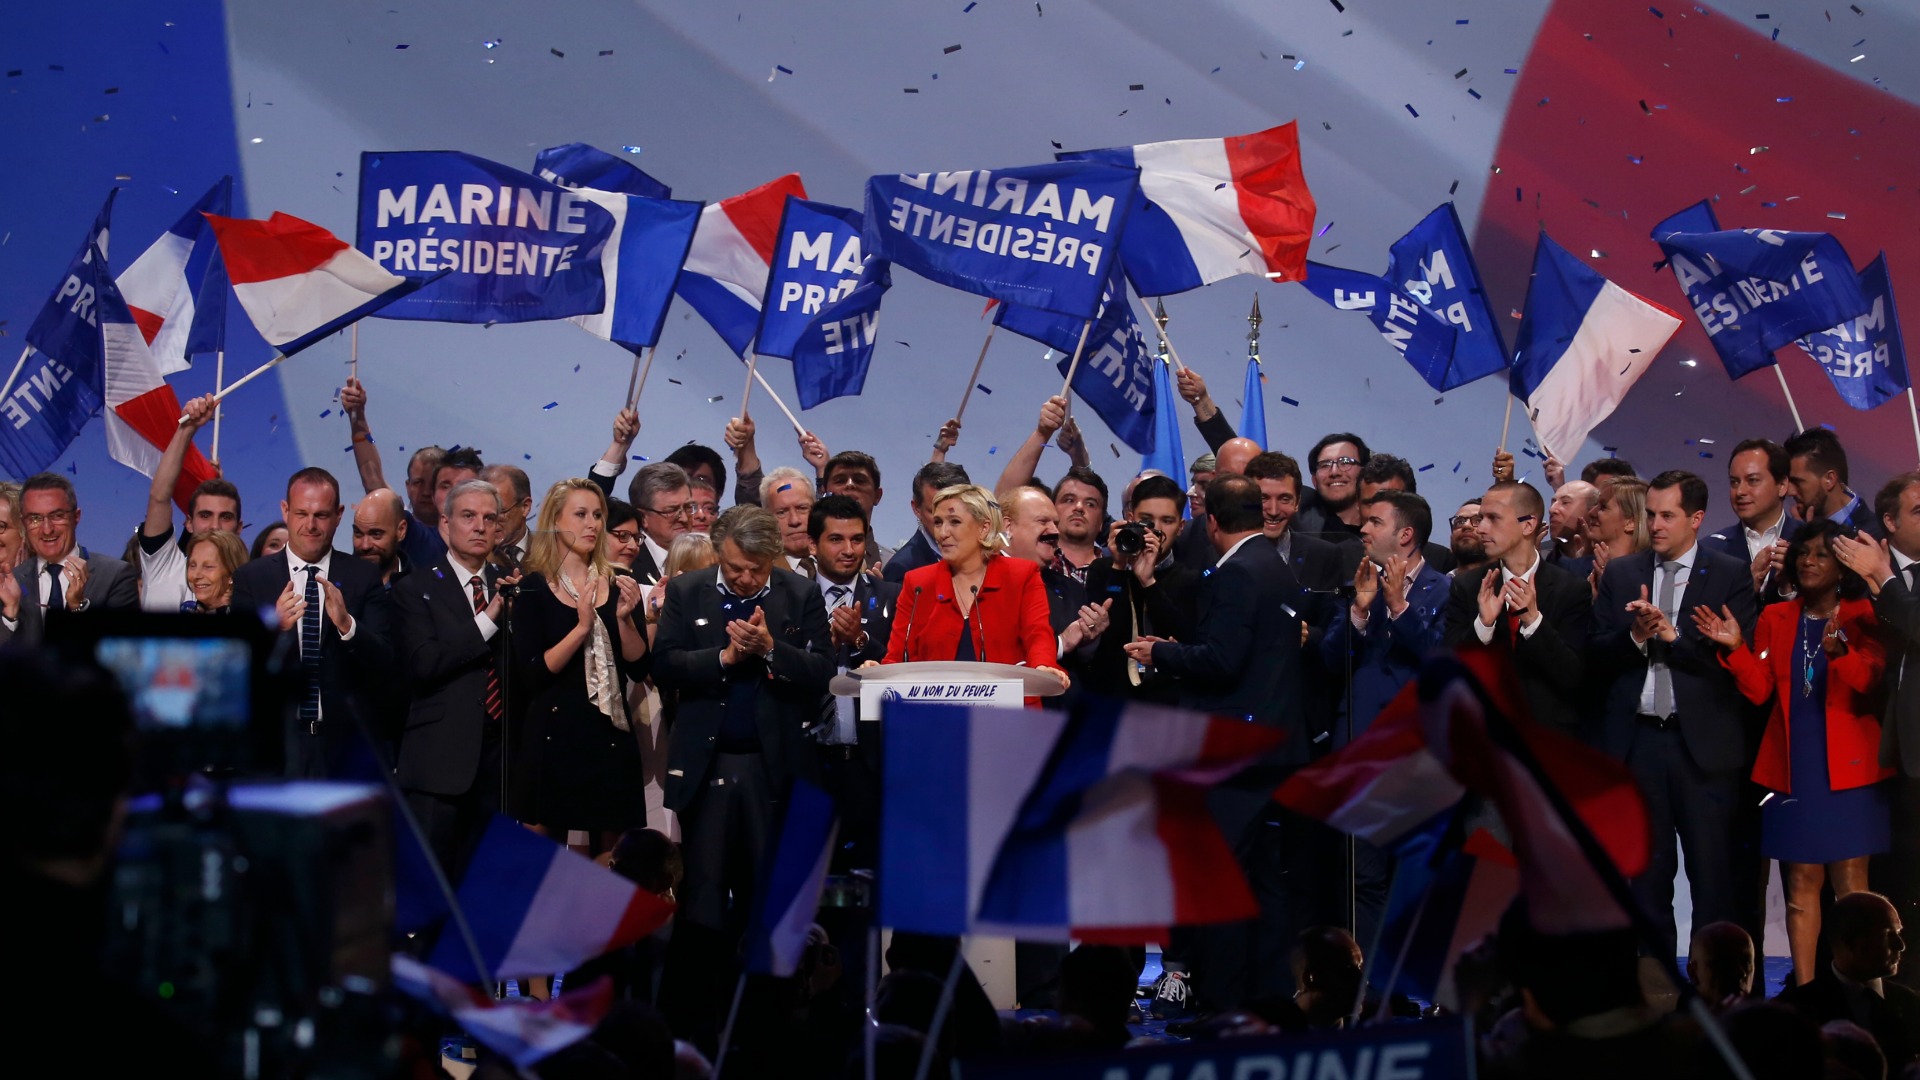 Varios Premios Nobel alertan sobre los programas "antieuropeos" en las elecciones francesas